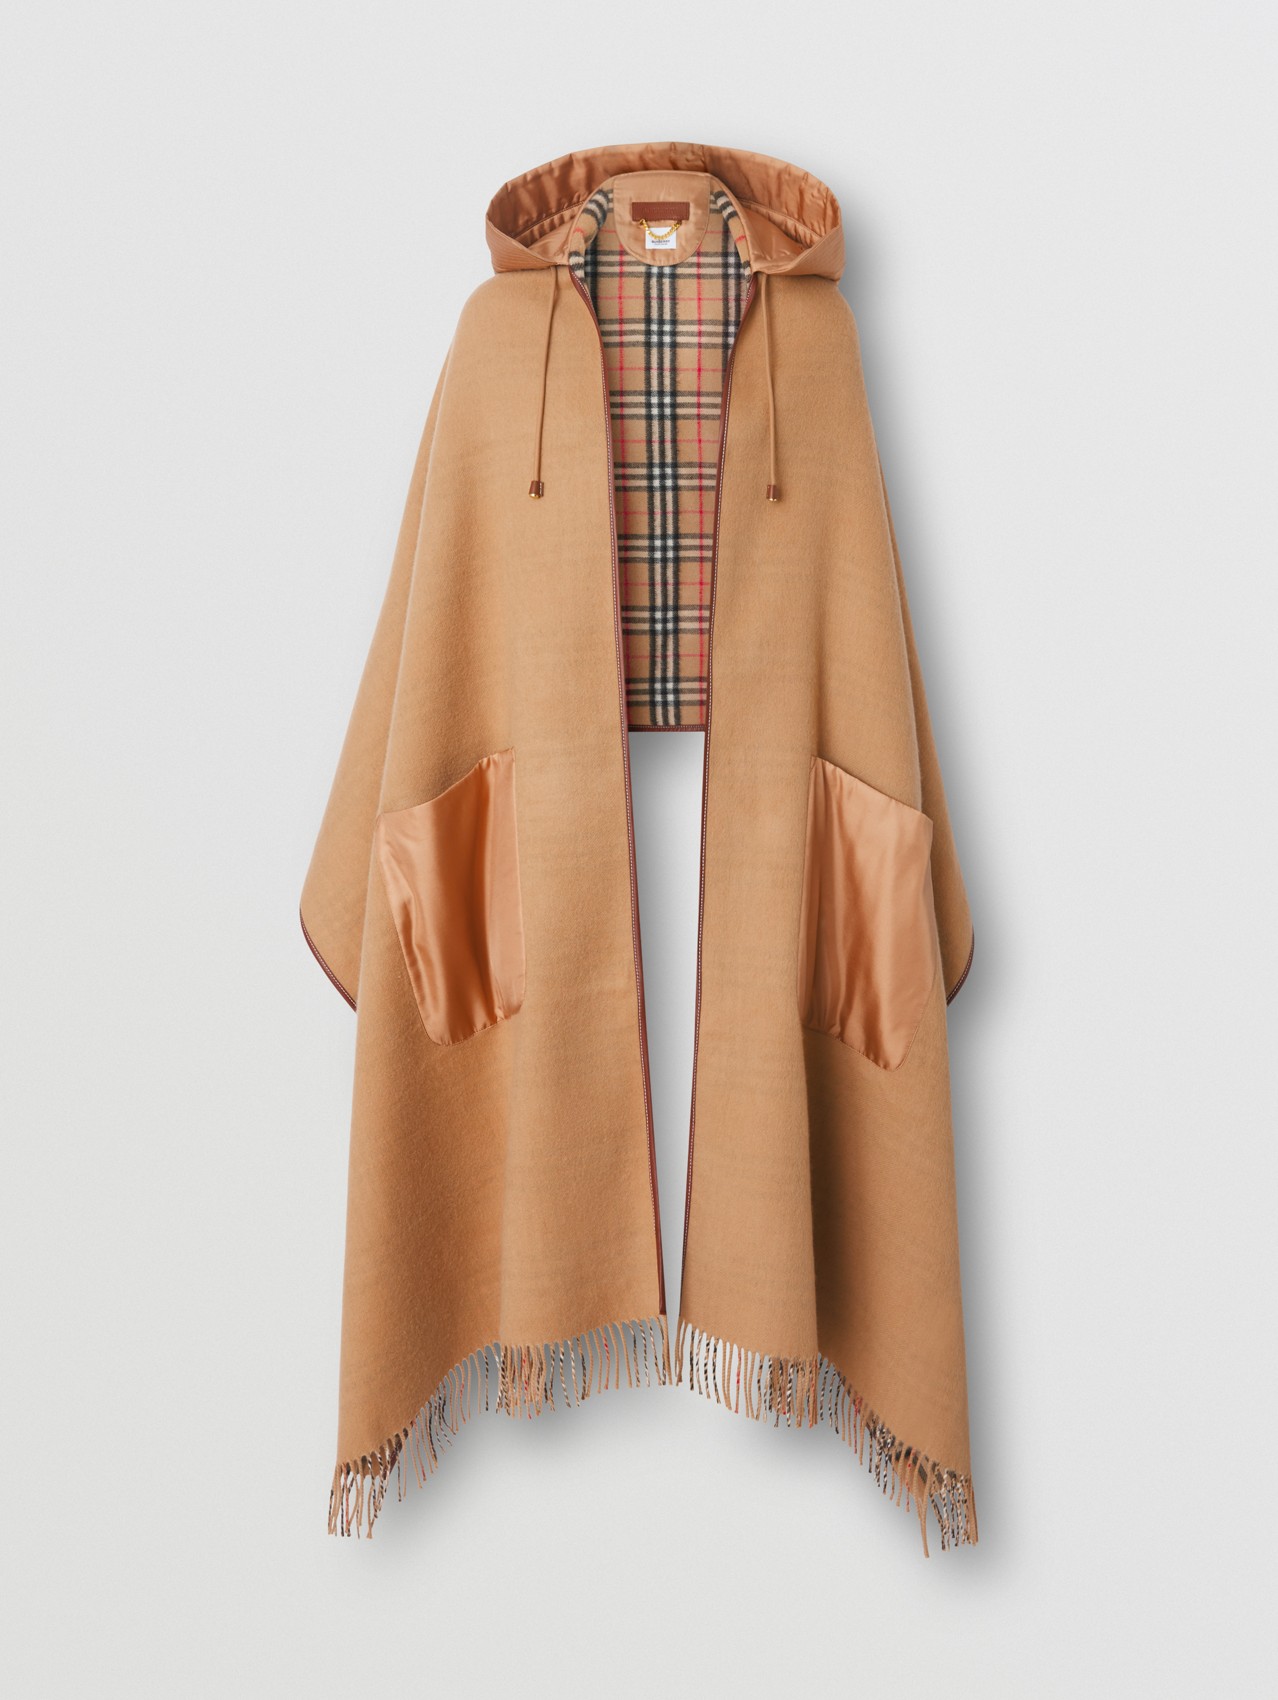 Mantella con cappuccio in lana e cashmere con inserti a contrasto (Beige Archivio)